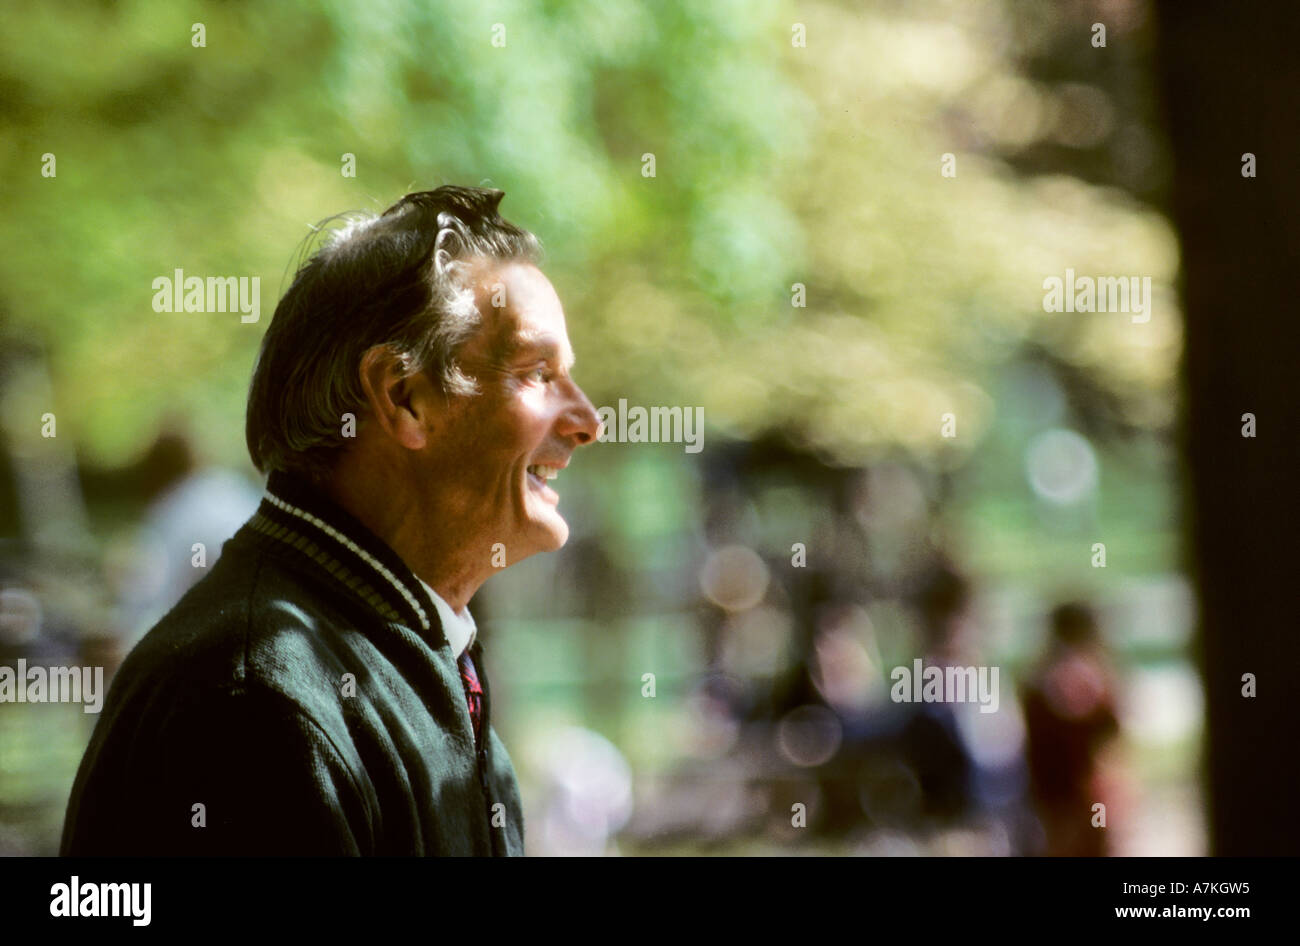 Backlit uomo sorridente contro al di fuori della messa a fuoco lo sfondo in un parco Wales UK Foto Stock